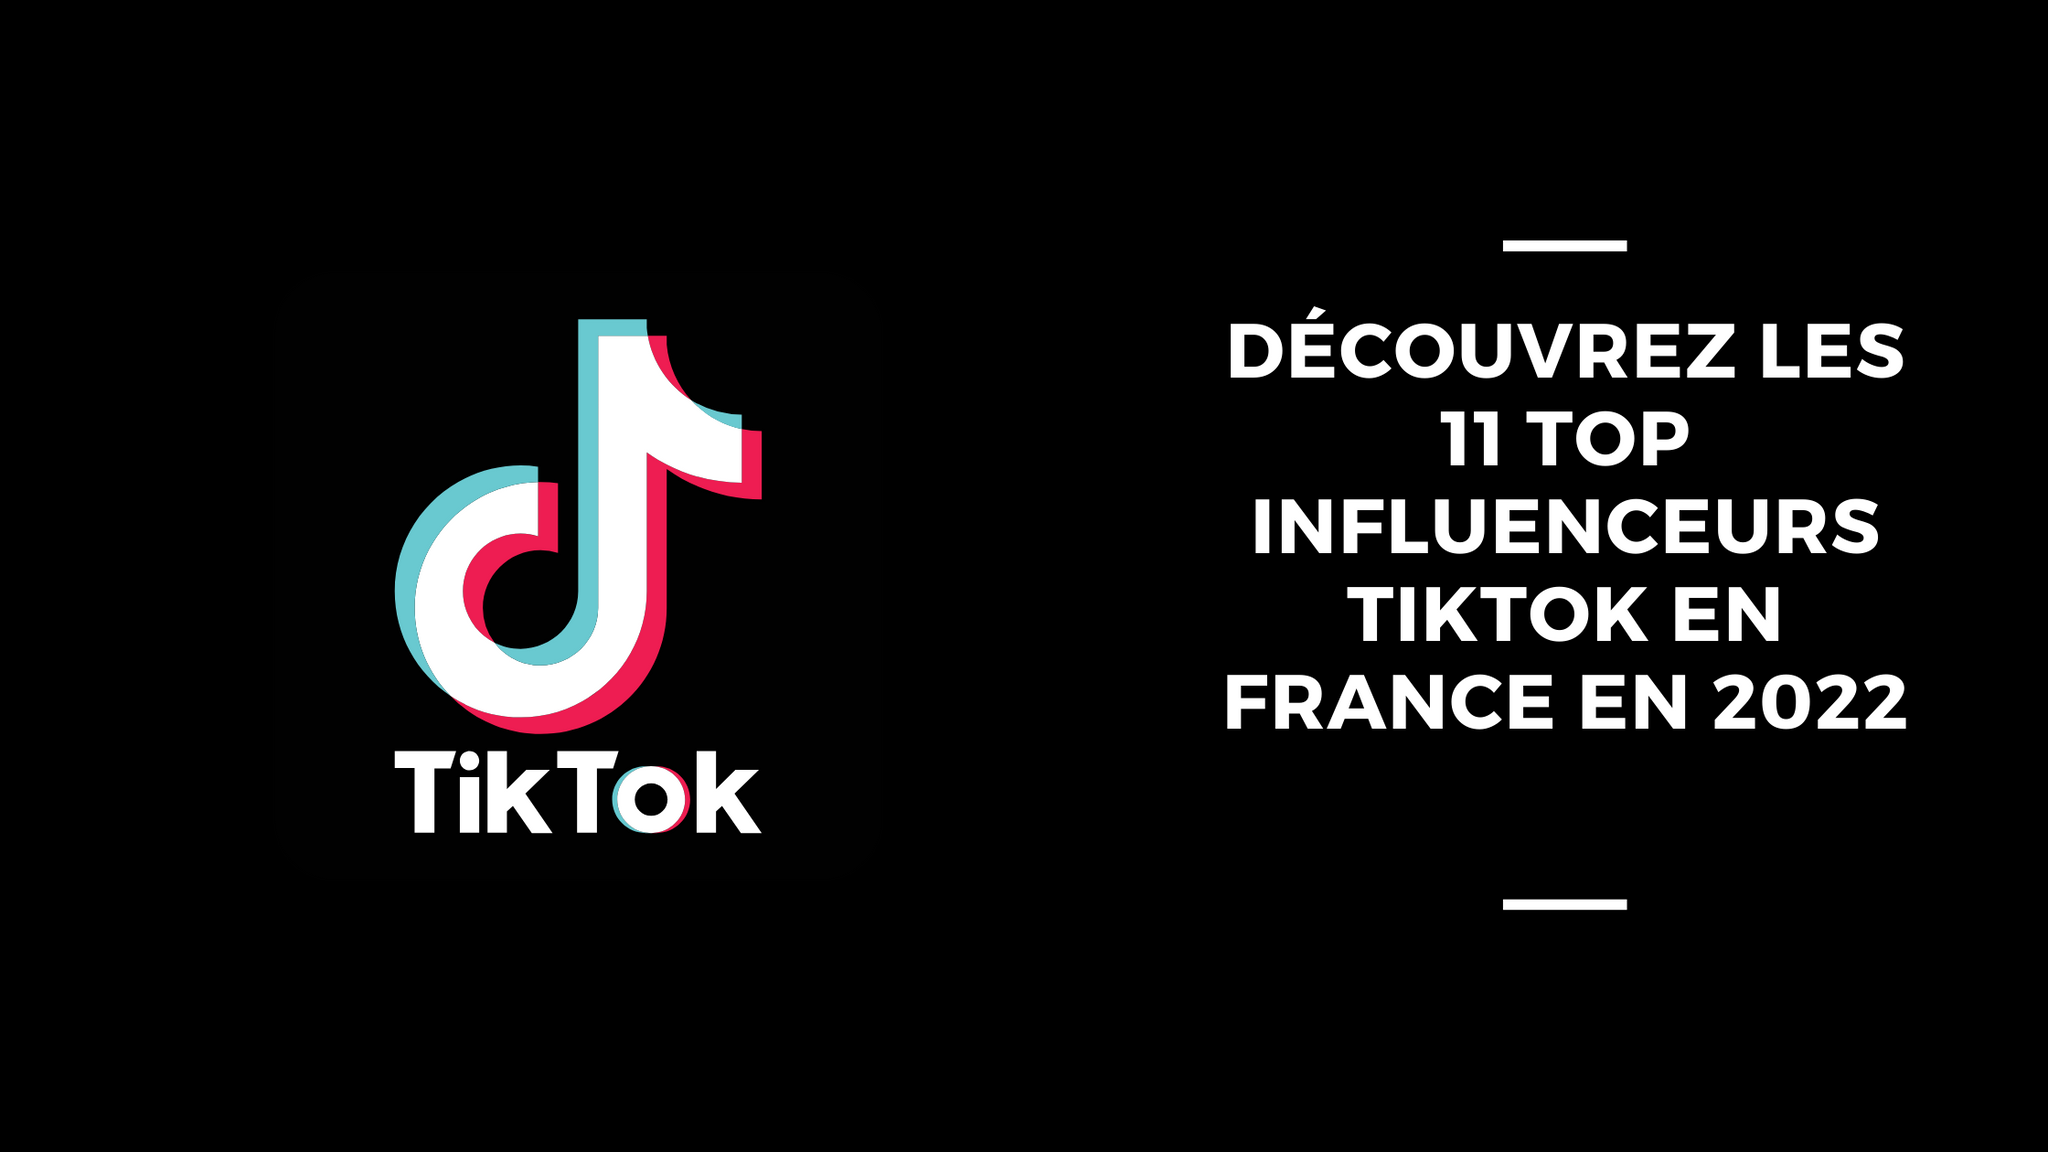 Découvrez Les 11 Top Influenceurs TikTok En France En 2022